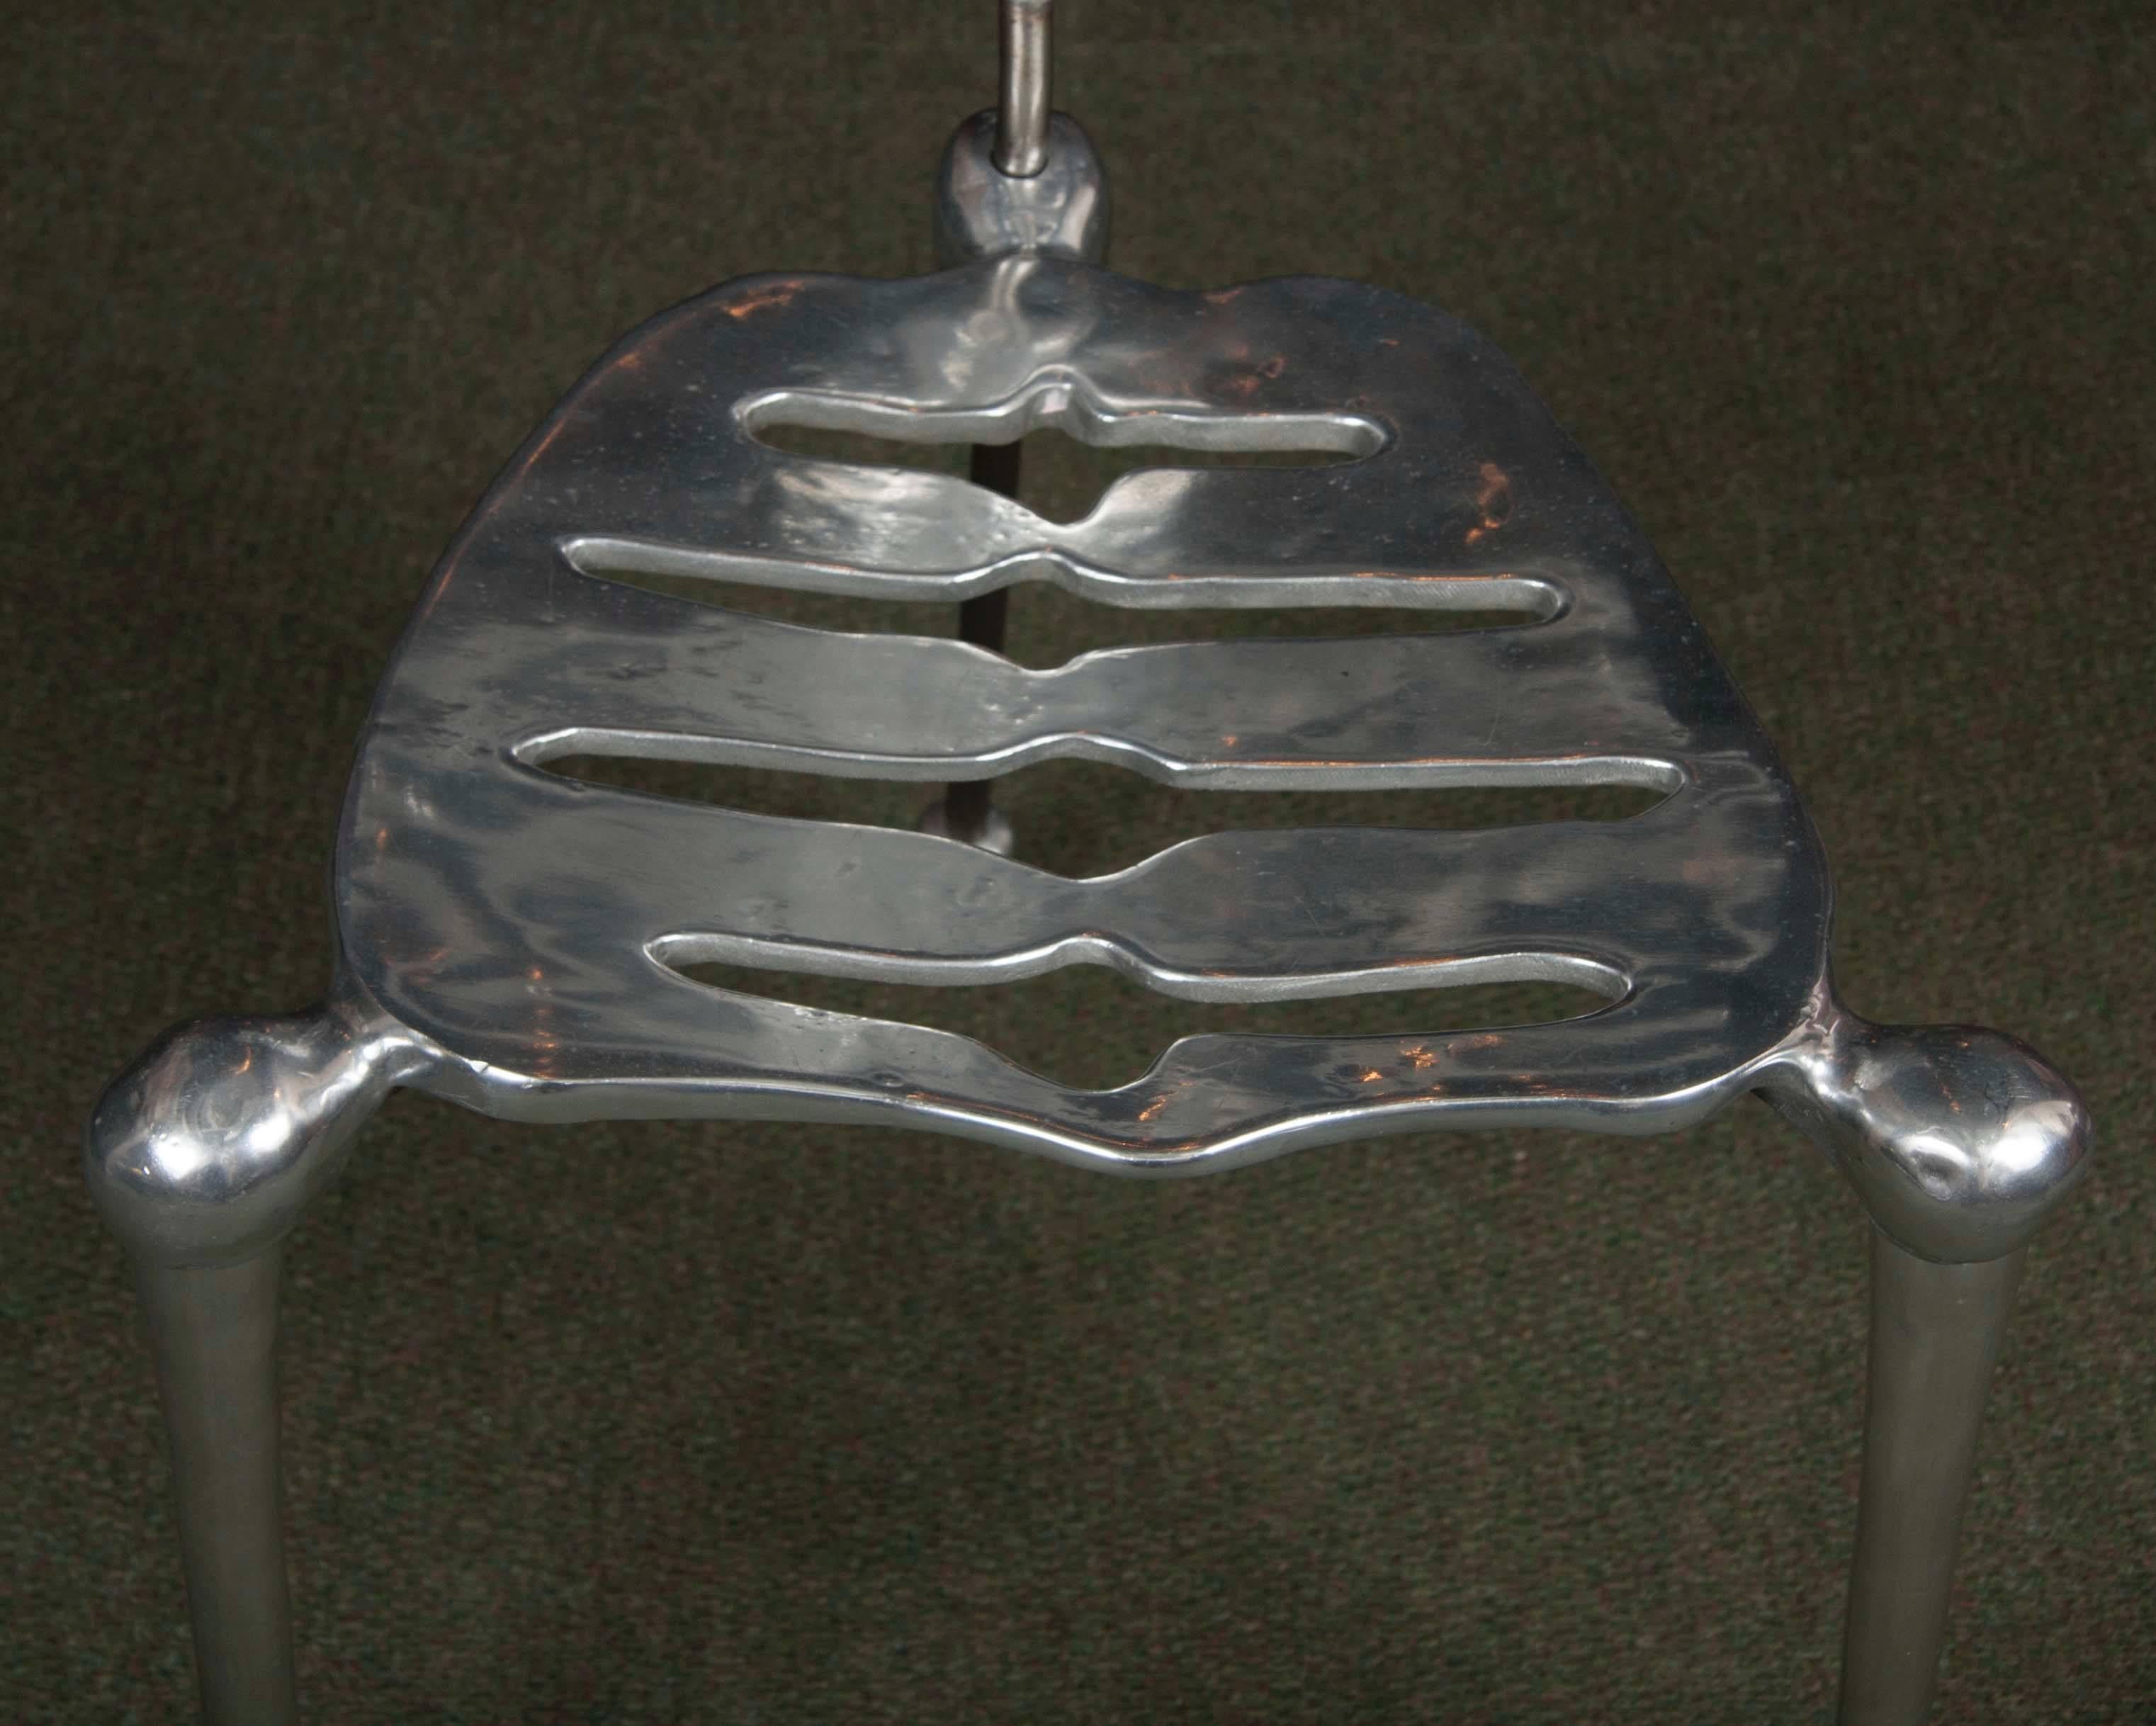 skeleton in chair